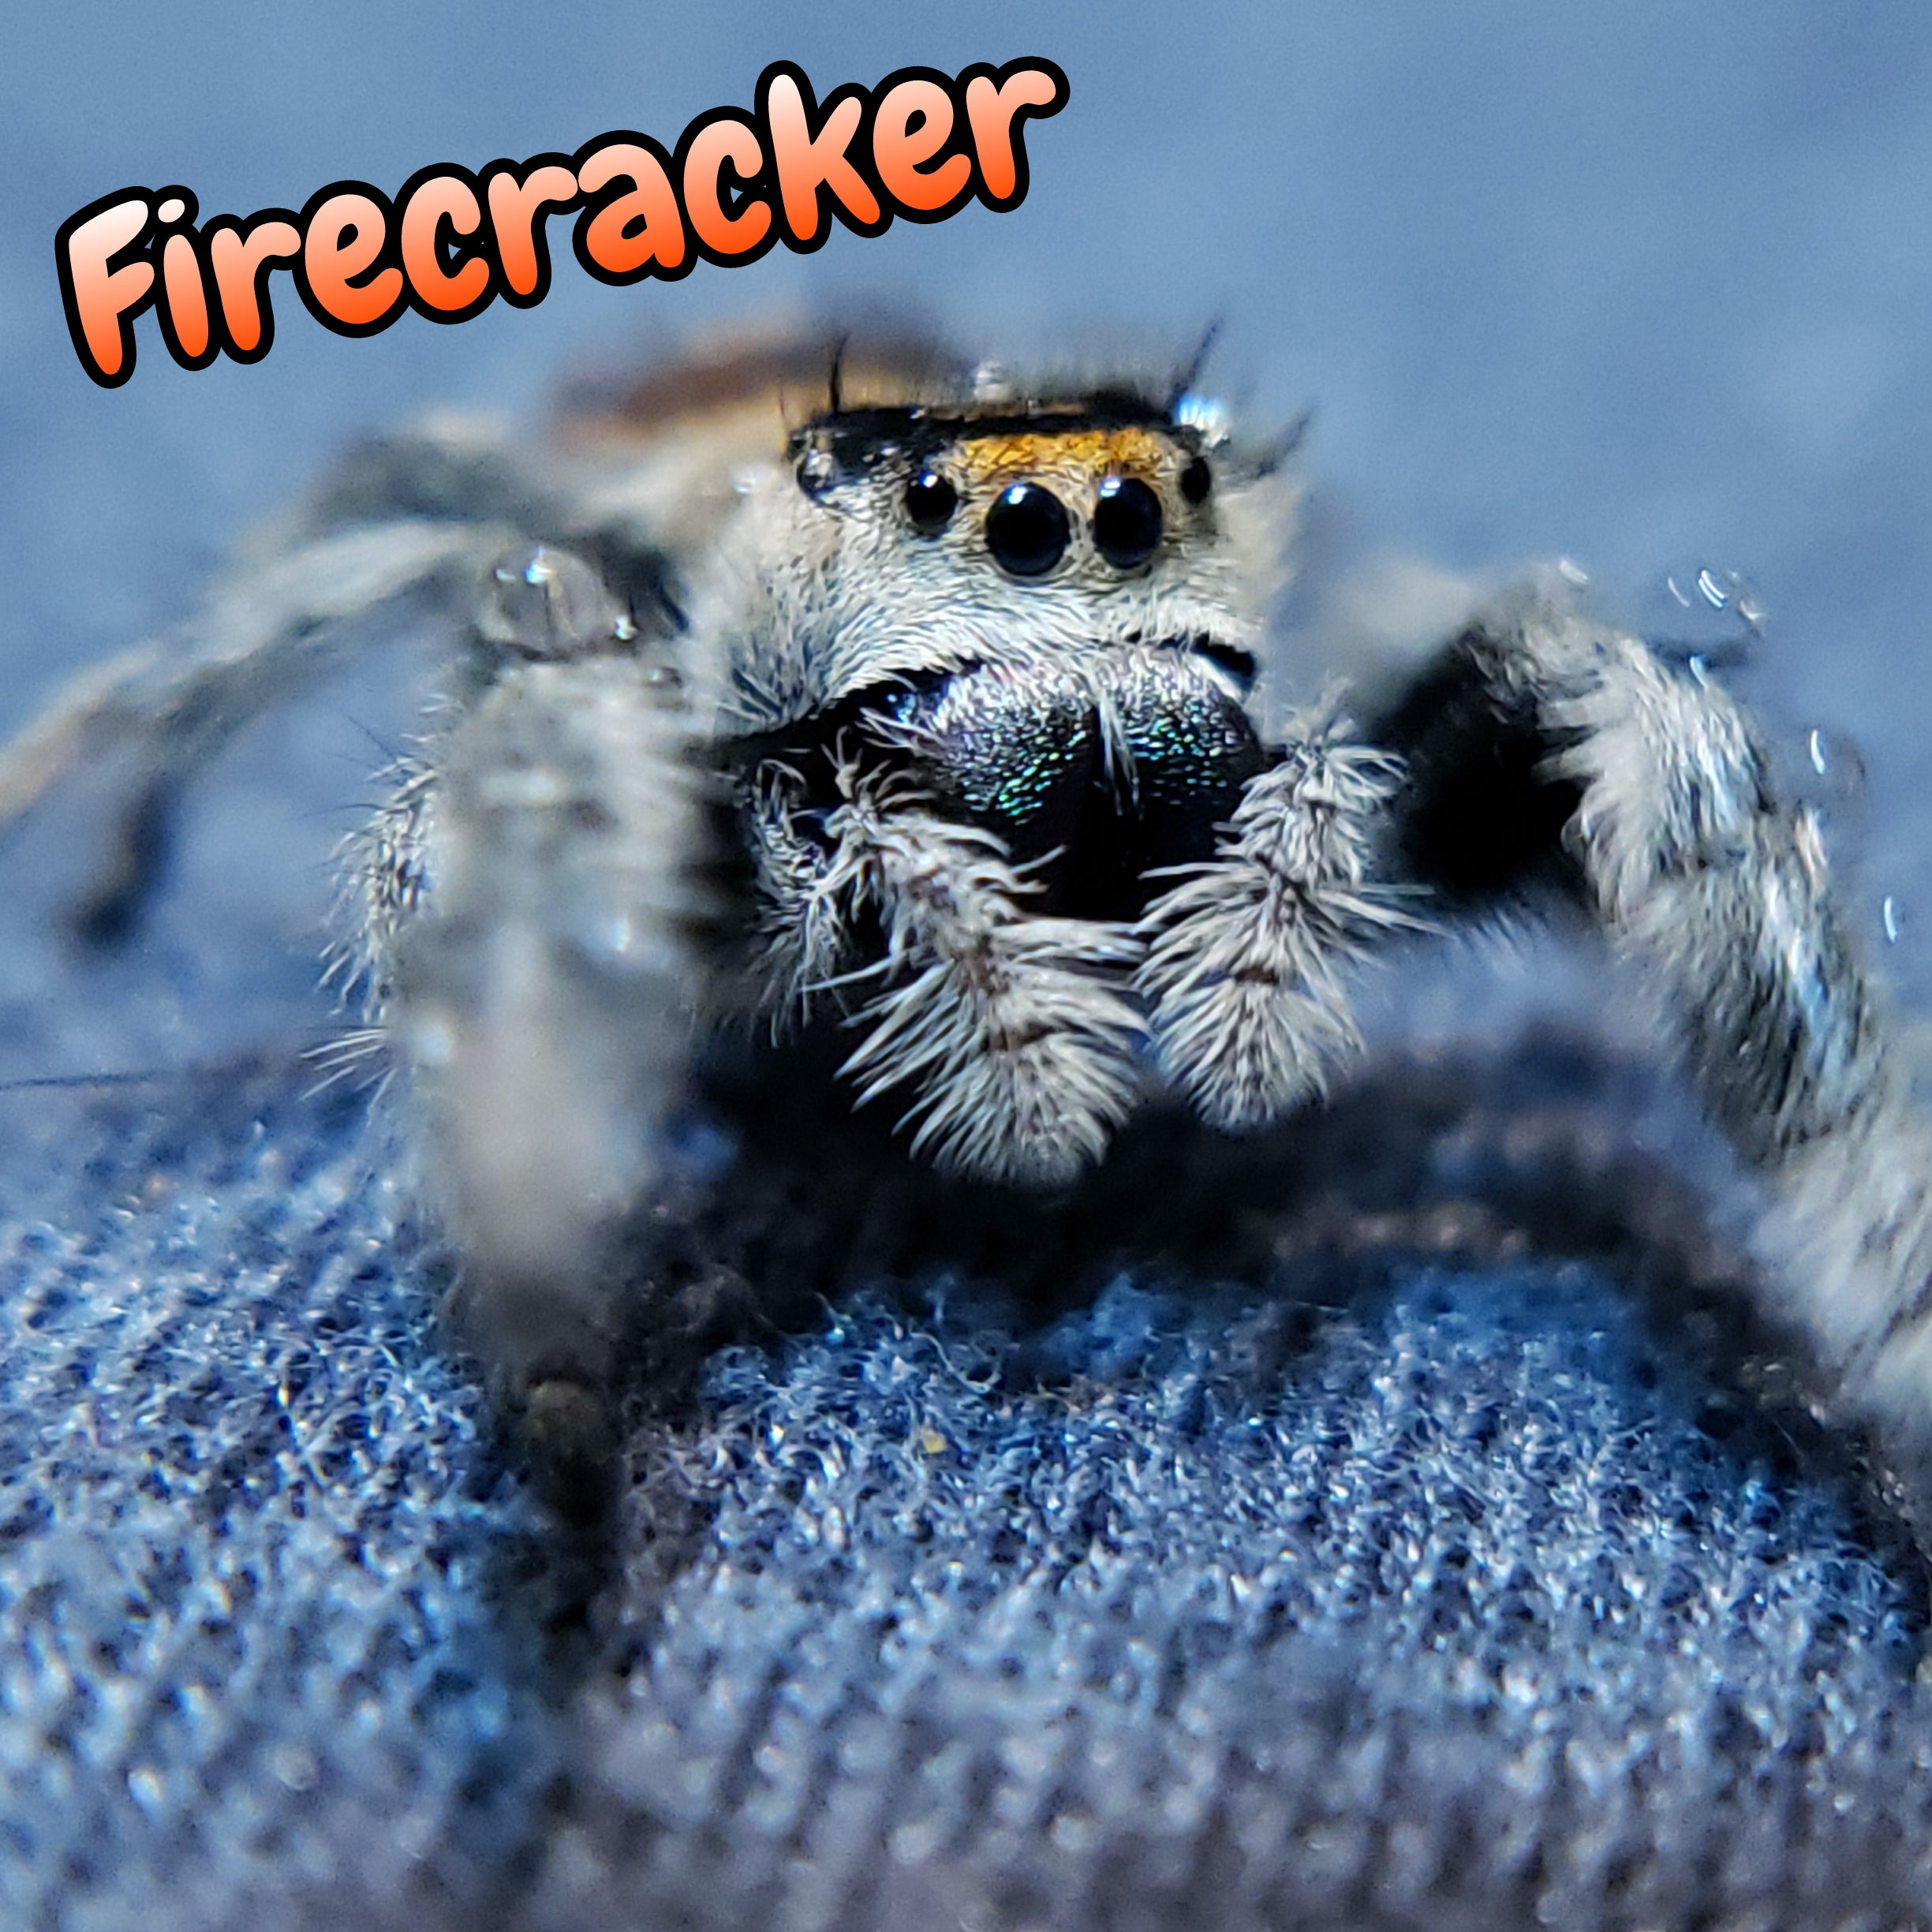 Regal Jumping Spider "Firecracker"